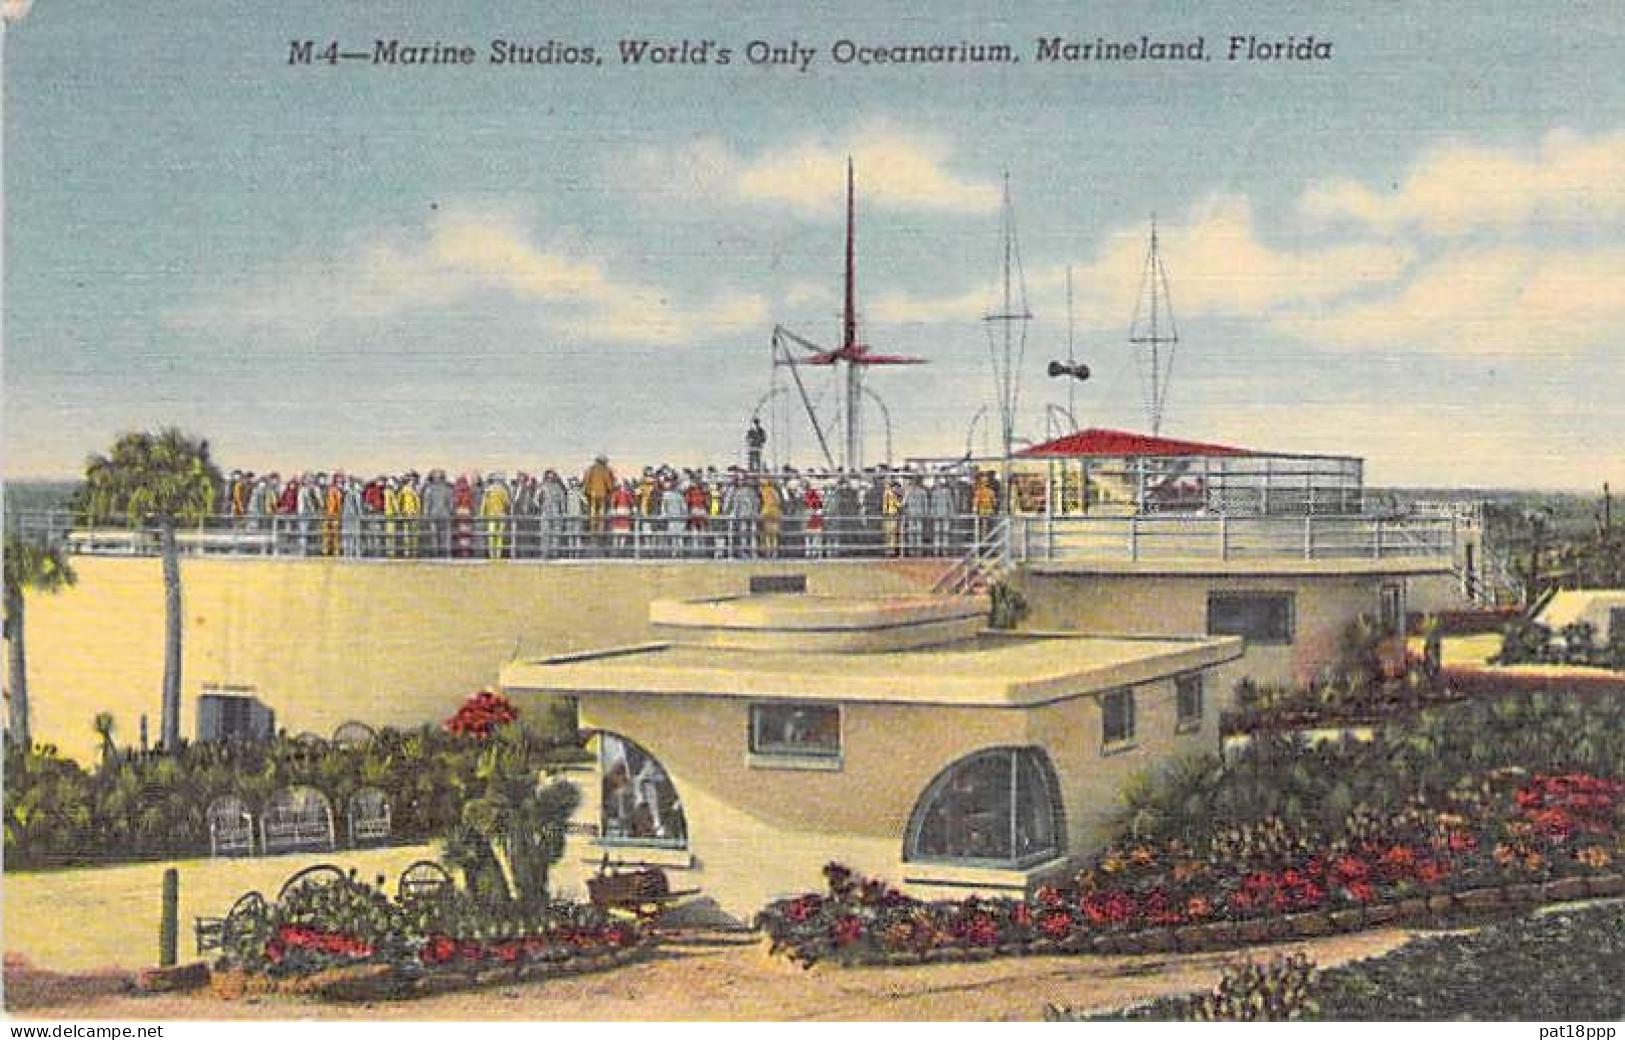 Bon Lot De 100 CPSM Colorisées FLORIDE (USA) Format CPA (80 % 1930-40's, Puis 1920's Et 10 GF 1980's) 0.15 € / Carte - 100 - 499 Postales